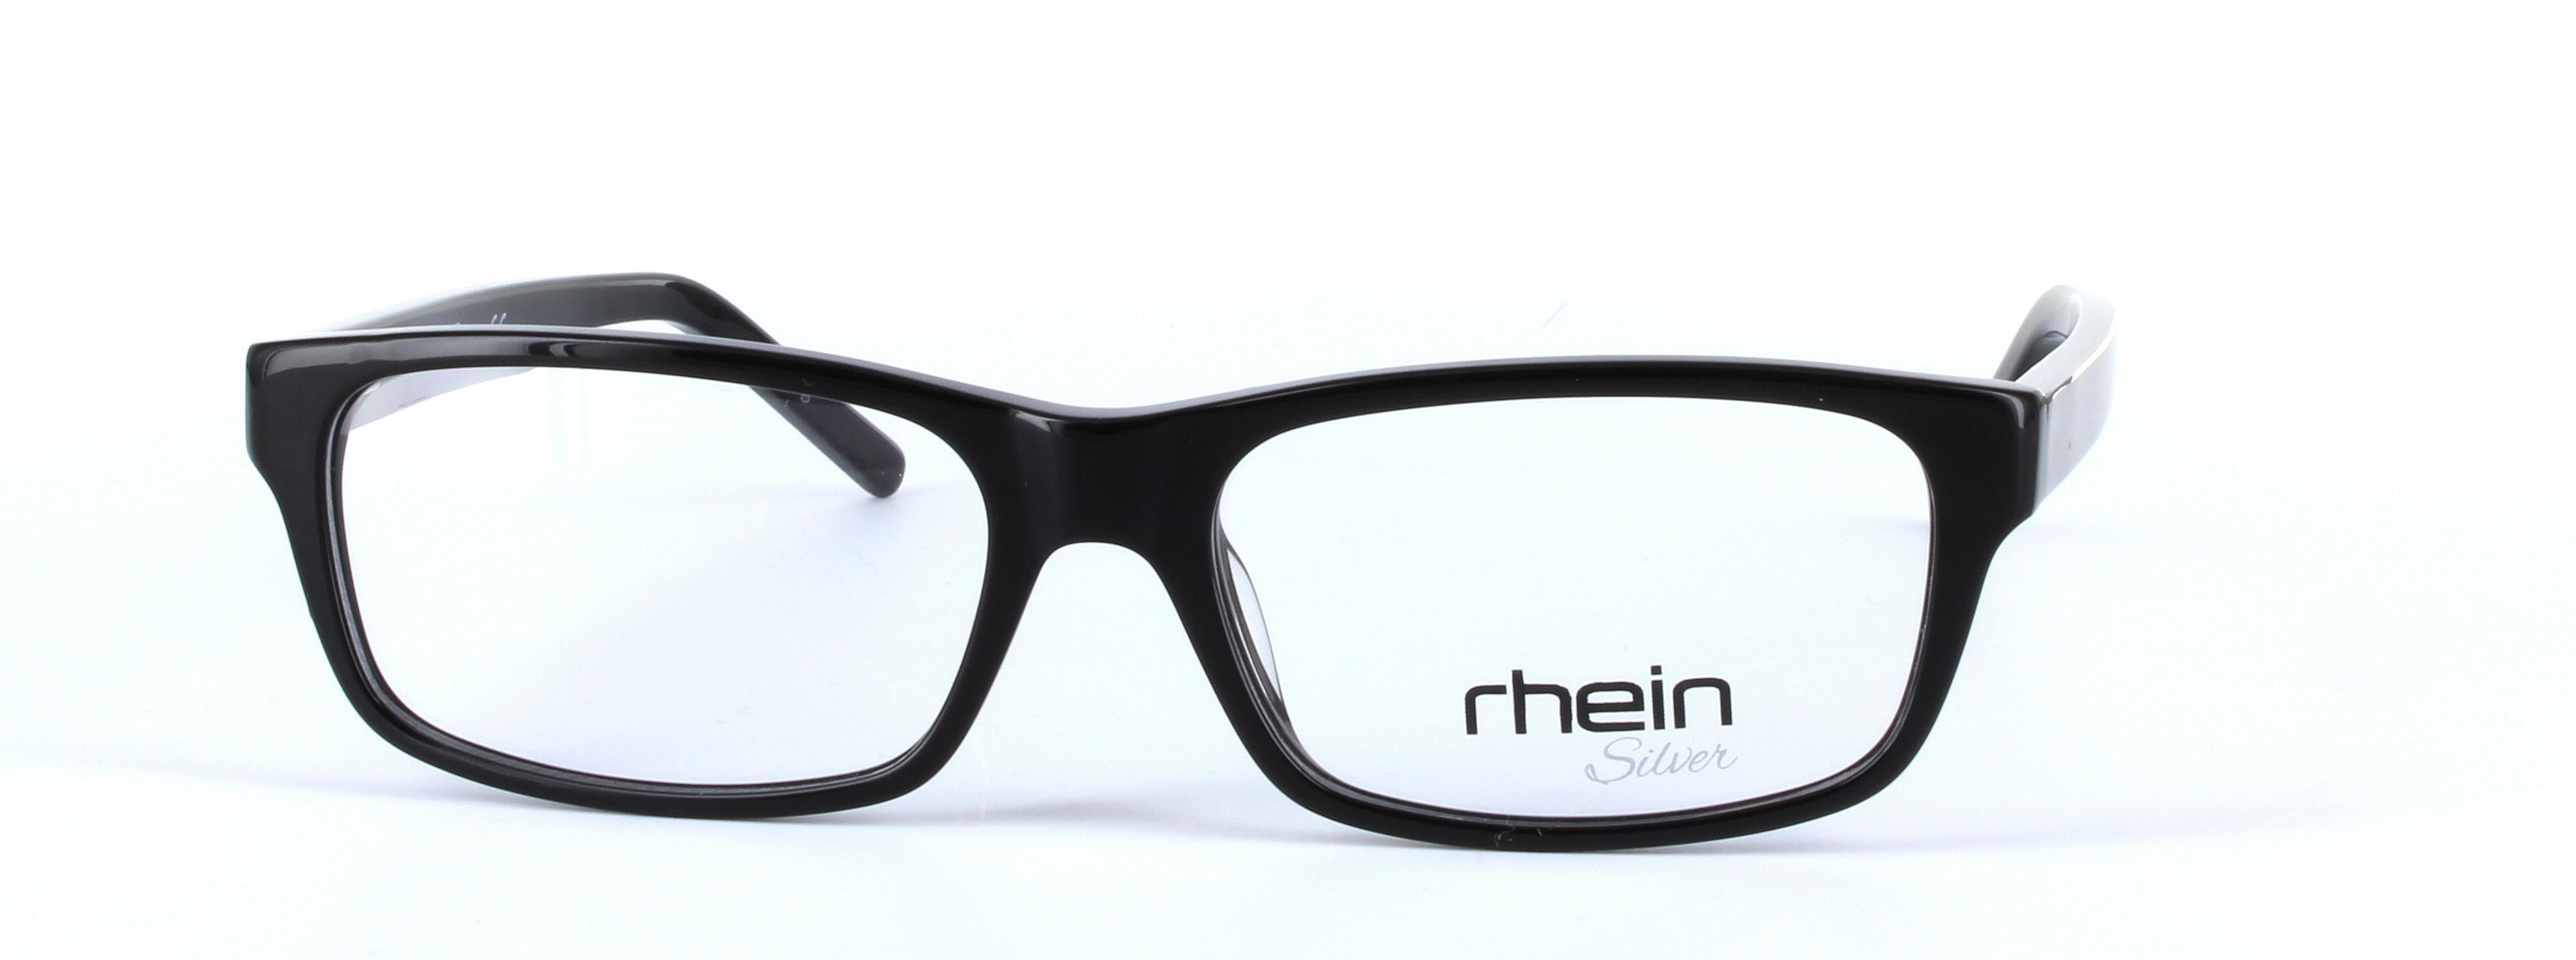 Franco Brown Full Rim Rectangular Acetate Glasses - Image View 5